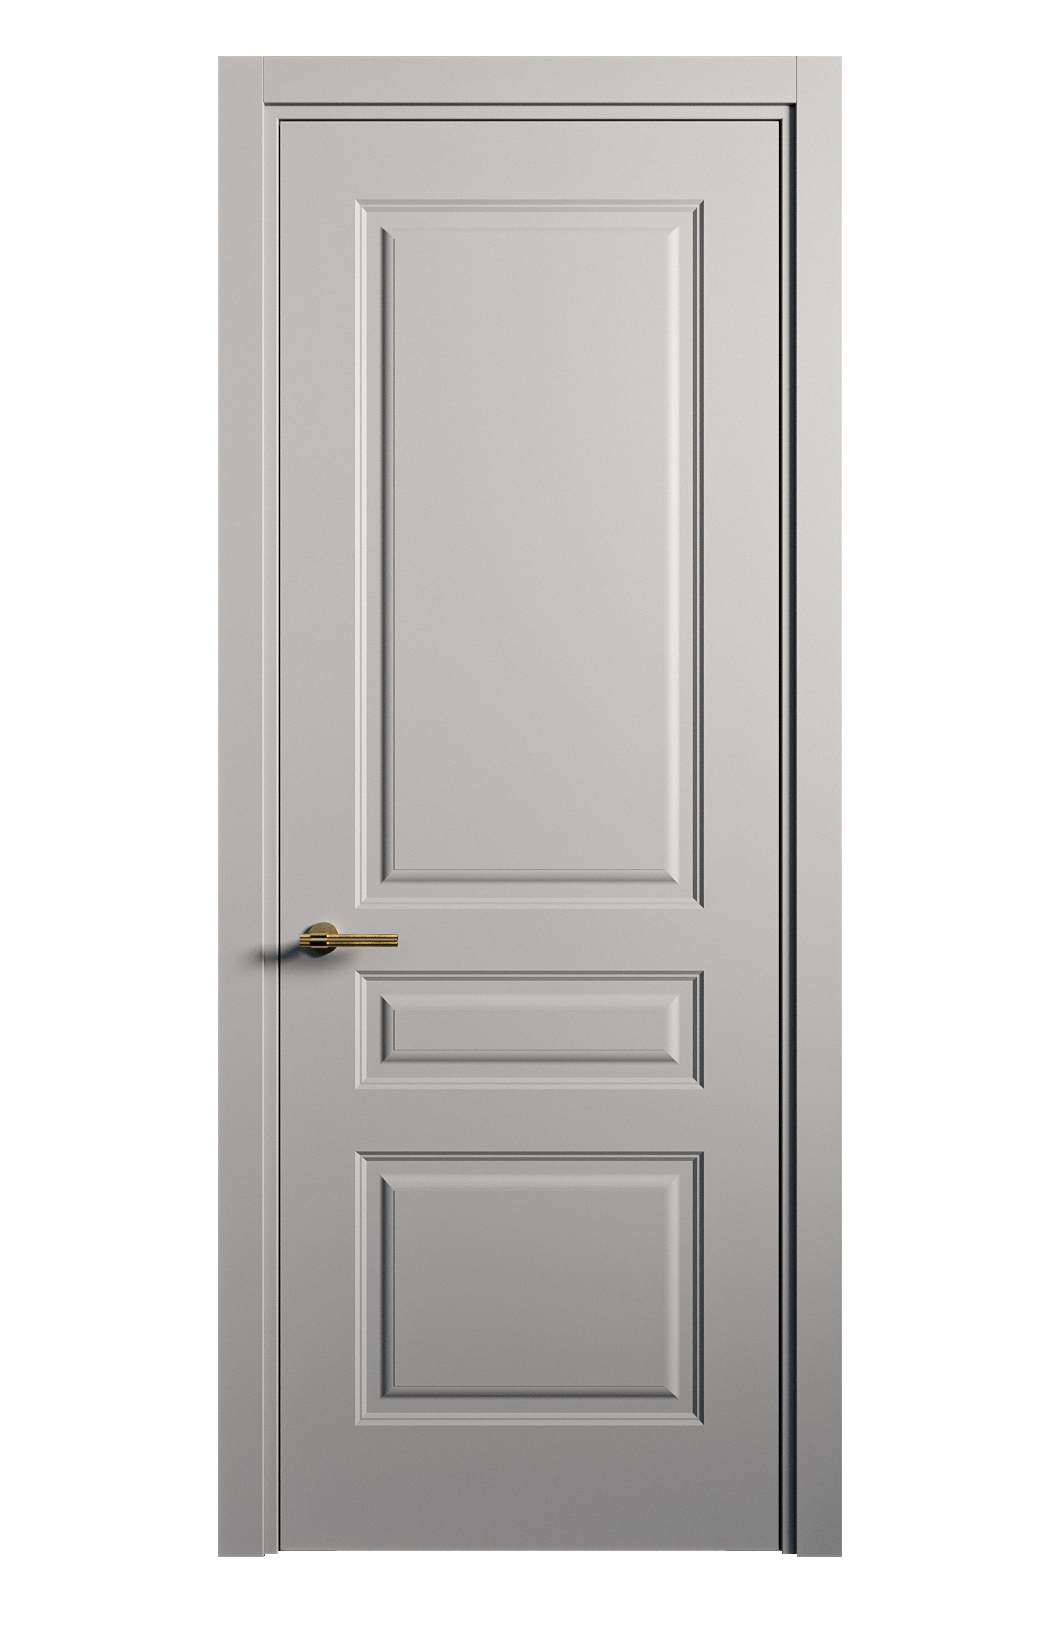 Межкомнатная дверь Вита-2 глухая эмаль ral 7040 26375